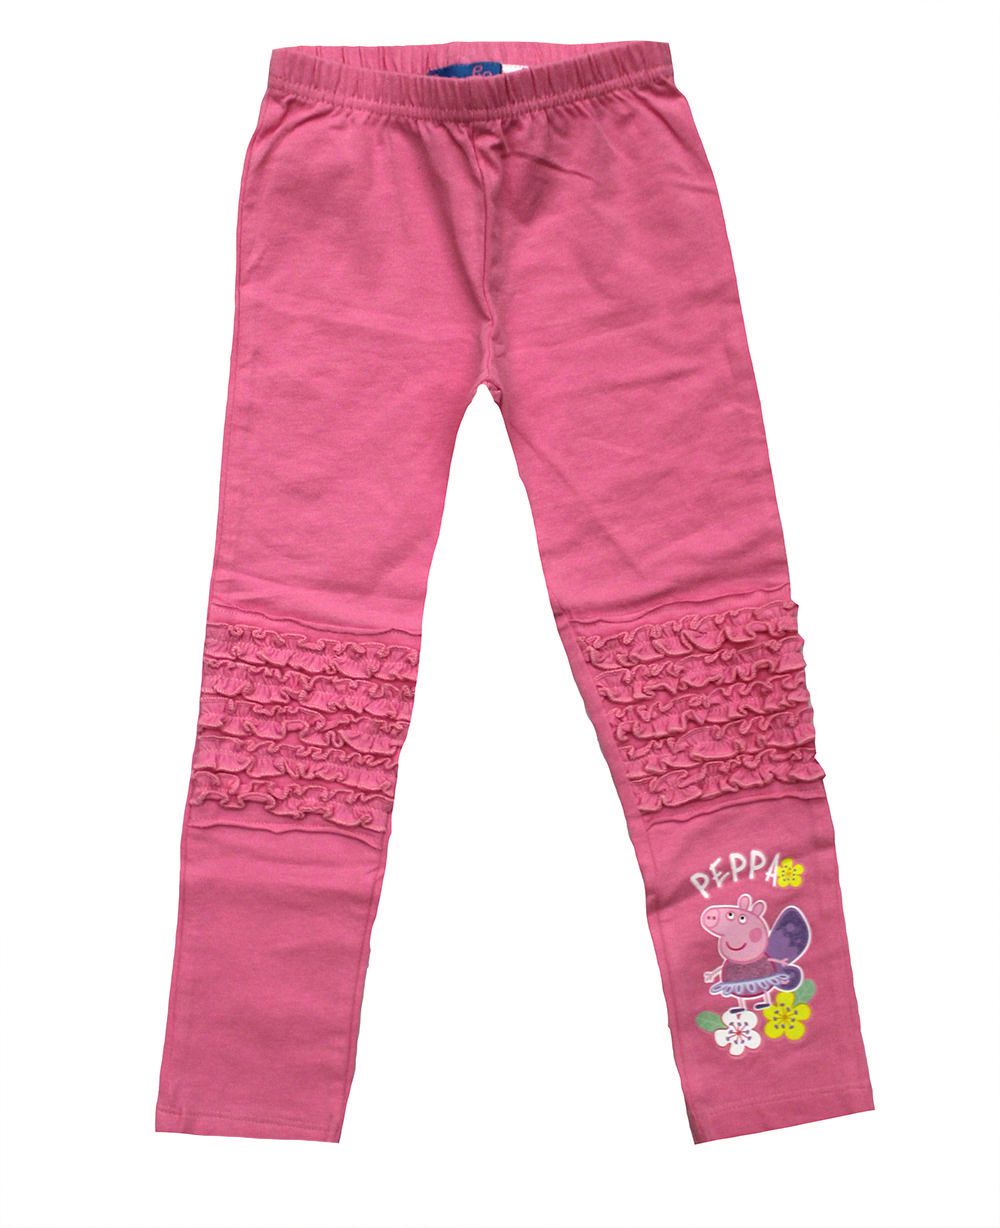 Peppa Pig Toddler Girls' Legging | Walmart Canada